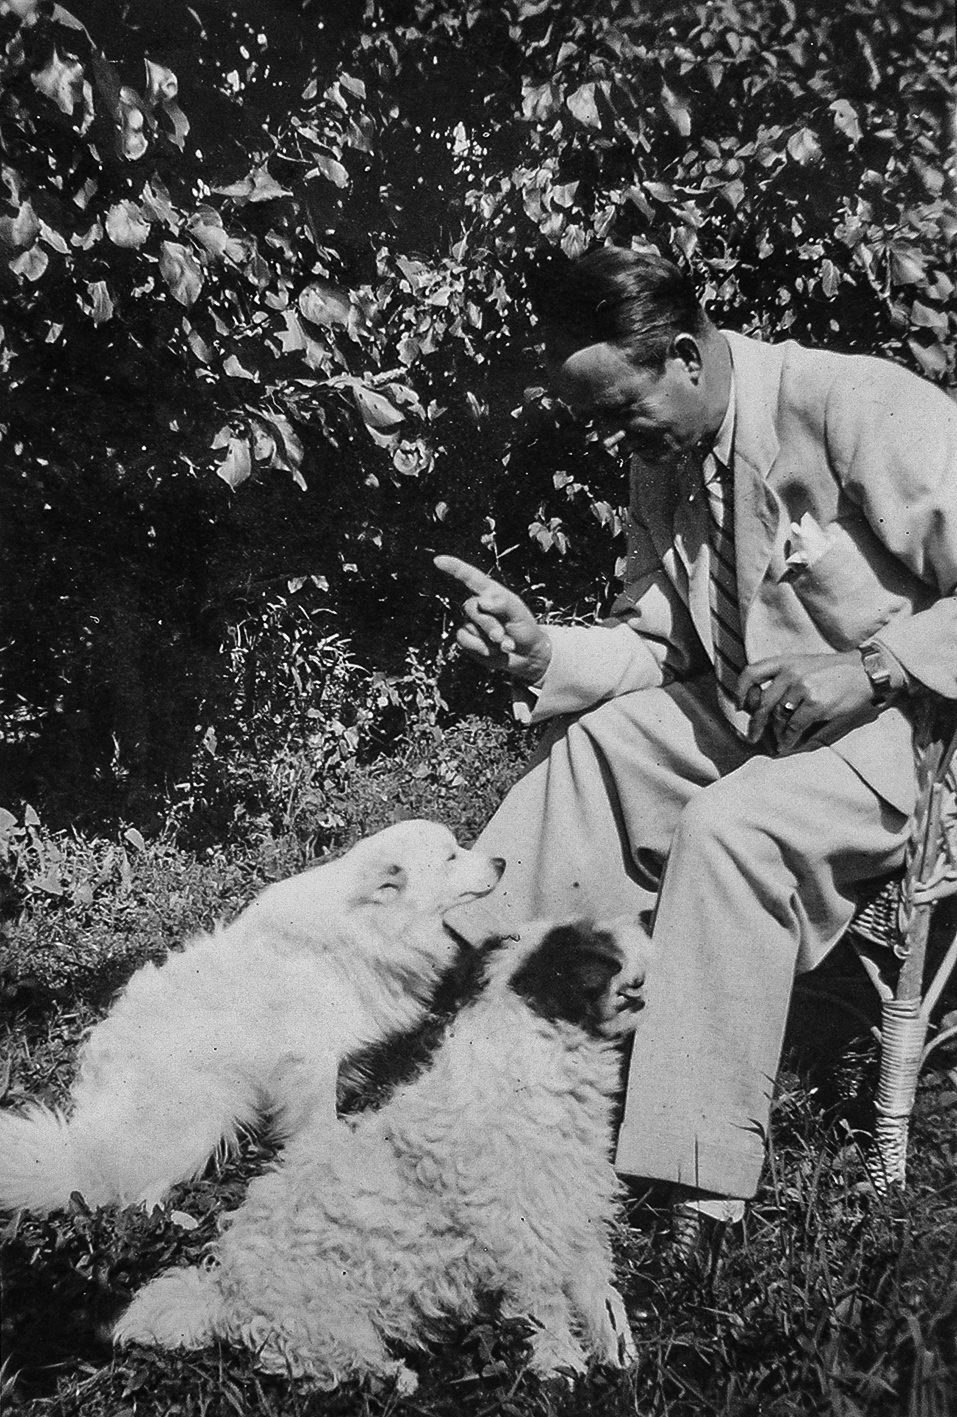 Adalbert Erdeli with his dogs